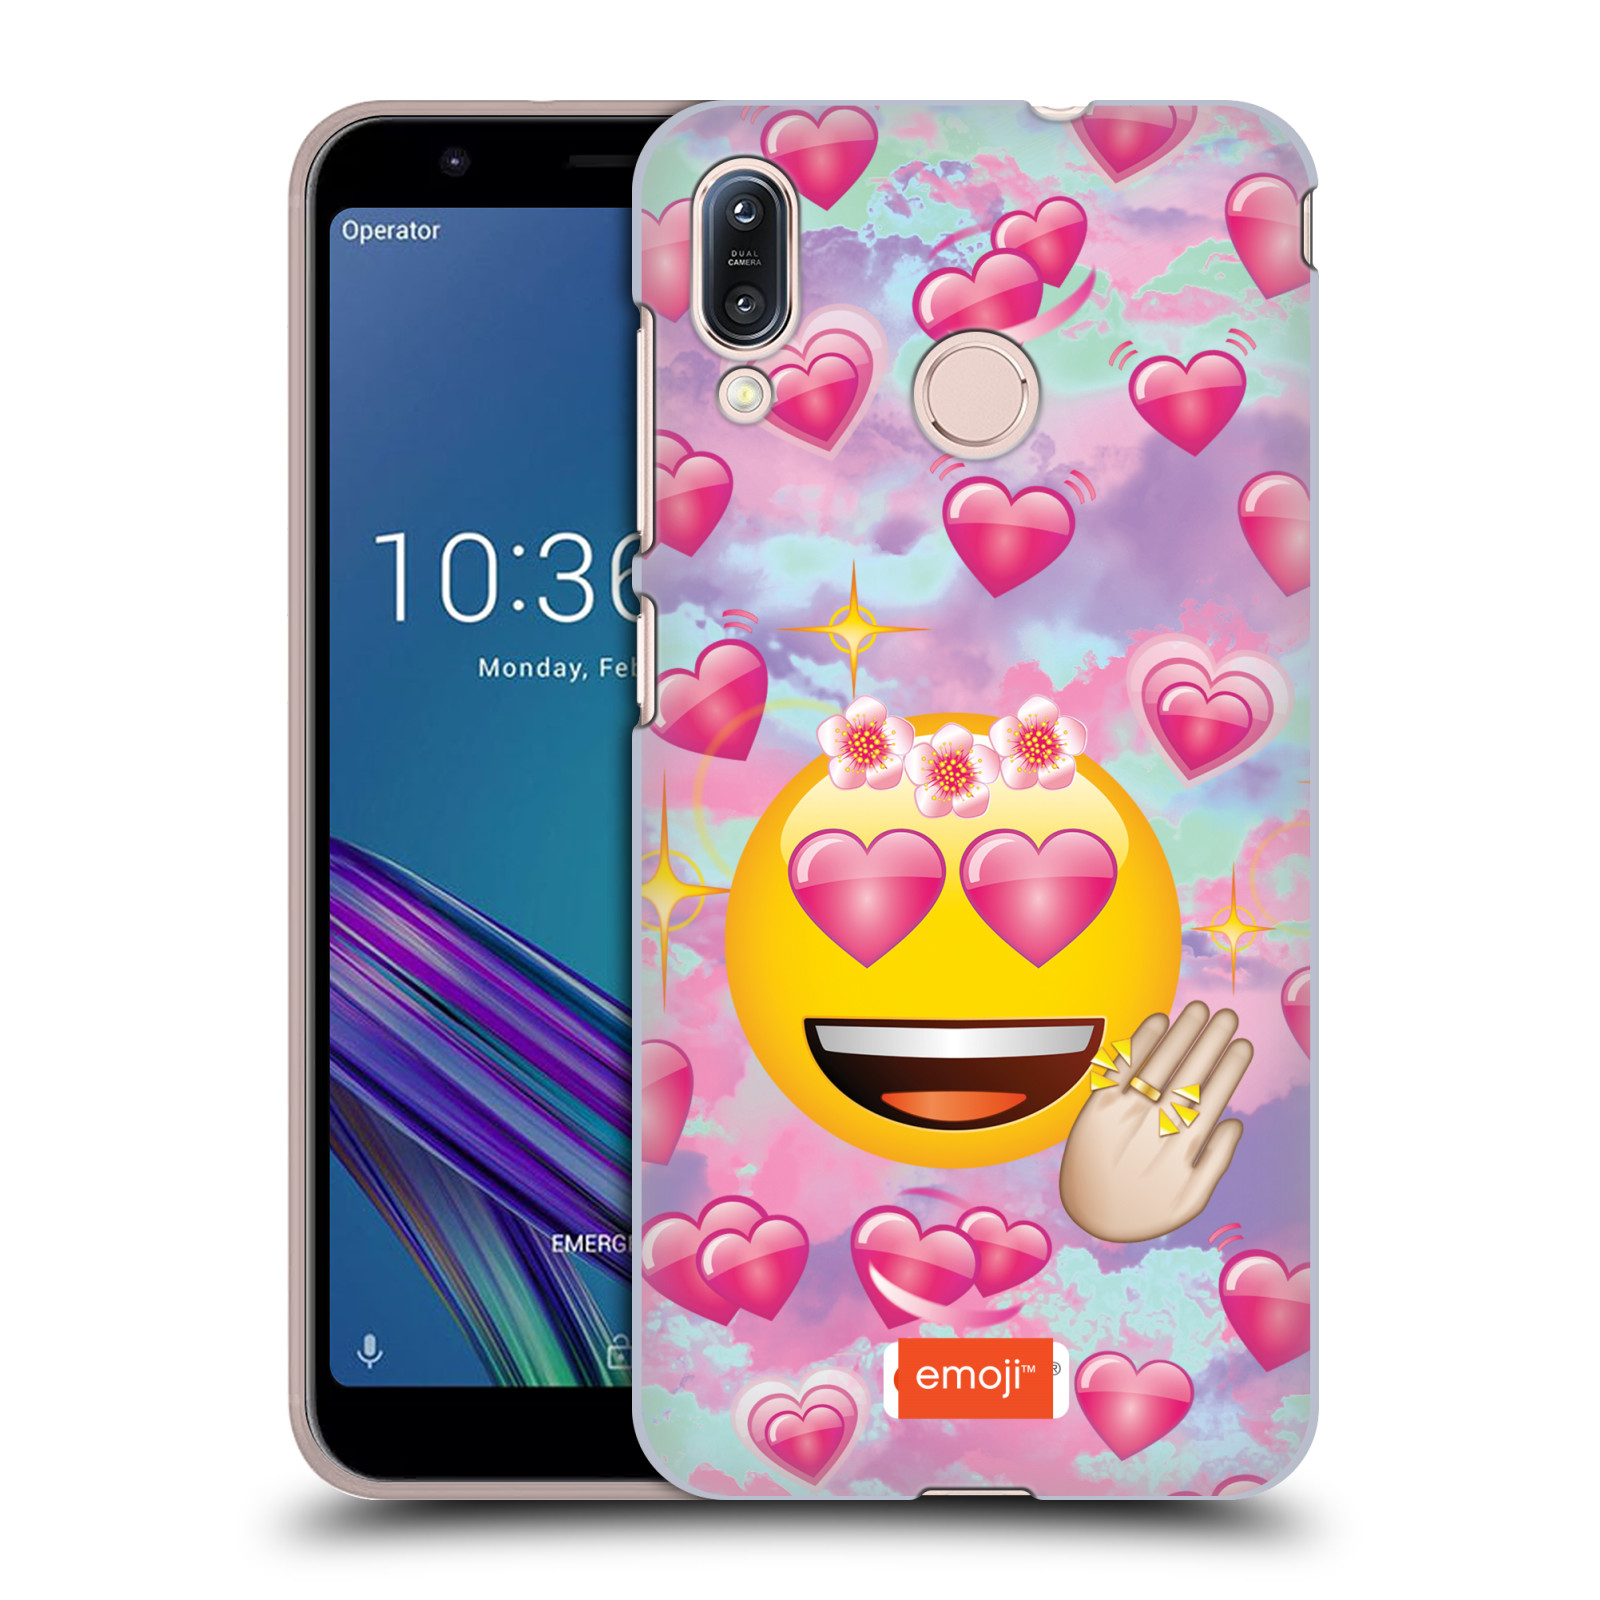 Pouzdro na mobil Asus Zenfone Max M1 (ZB555KL) - HEAD CASE - smajlík oficiální kryt EMOJI velký smajlík růžová srdíčka